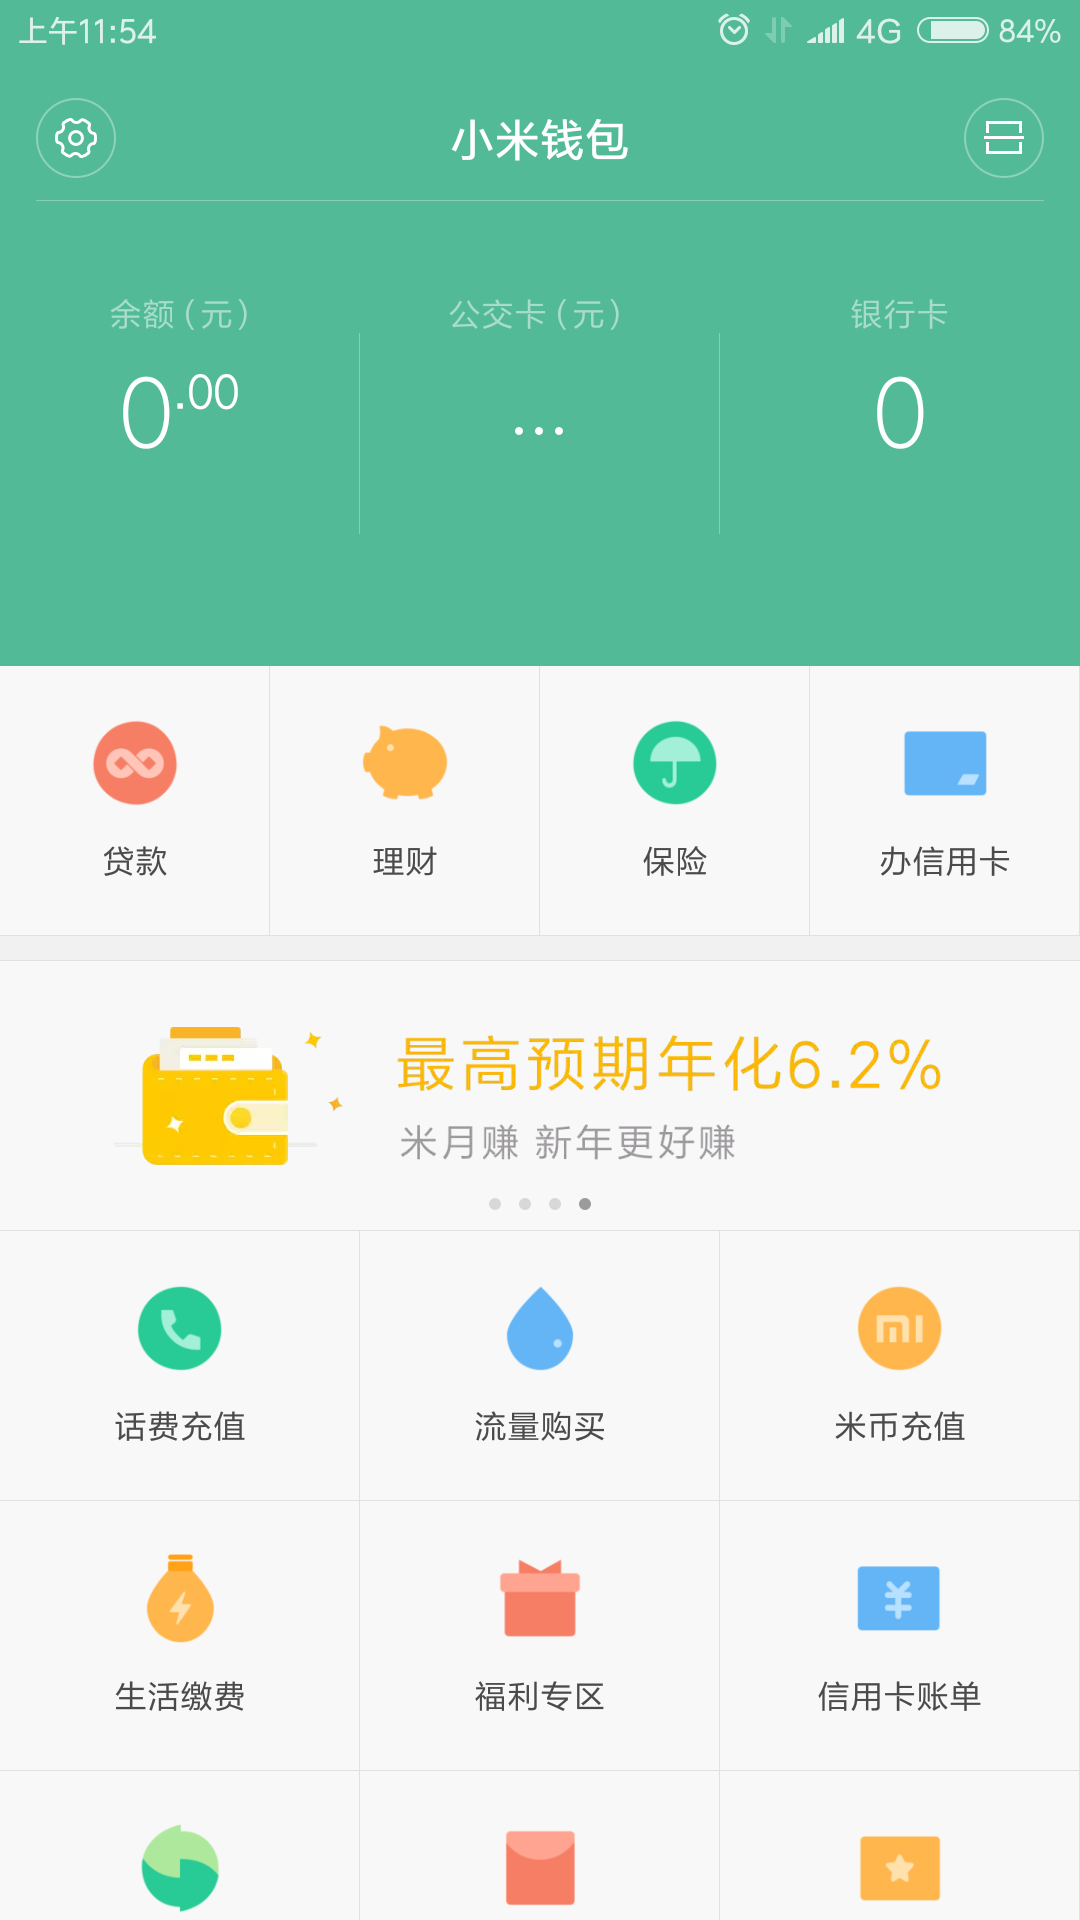 miui9小米钱包app提取版下载v6.62.0.4876.2147 最新版(小米钱包)_小米钱包apk提取下载地址